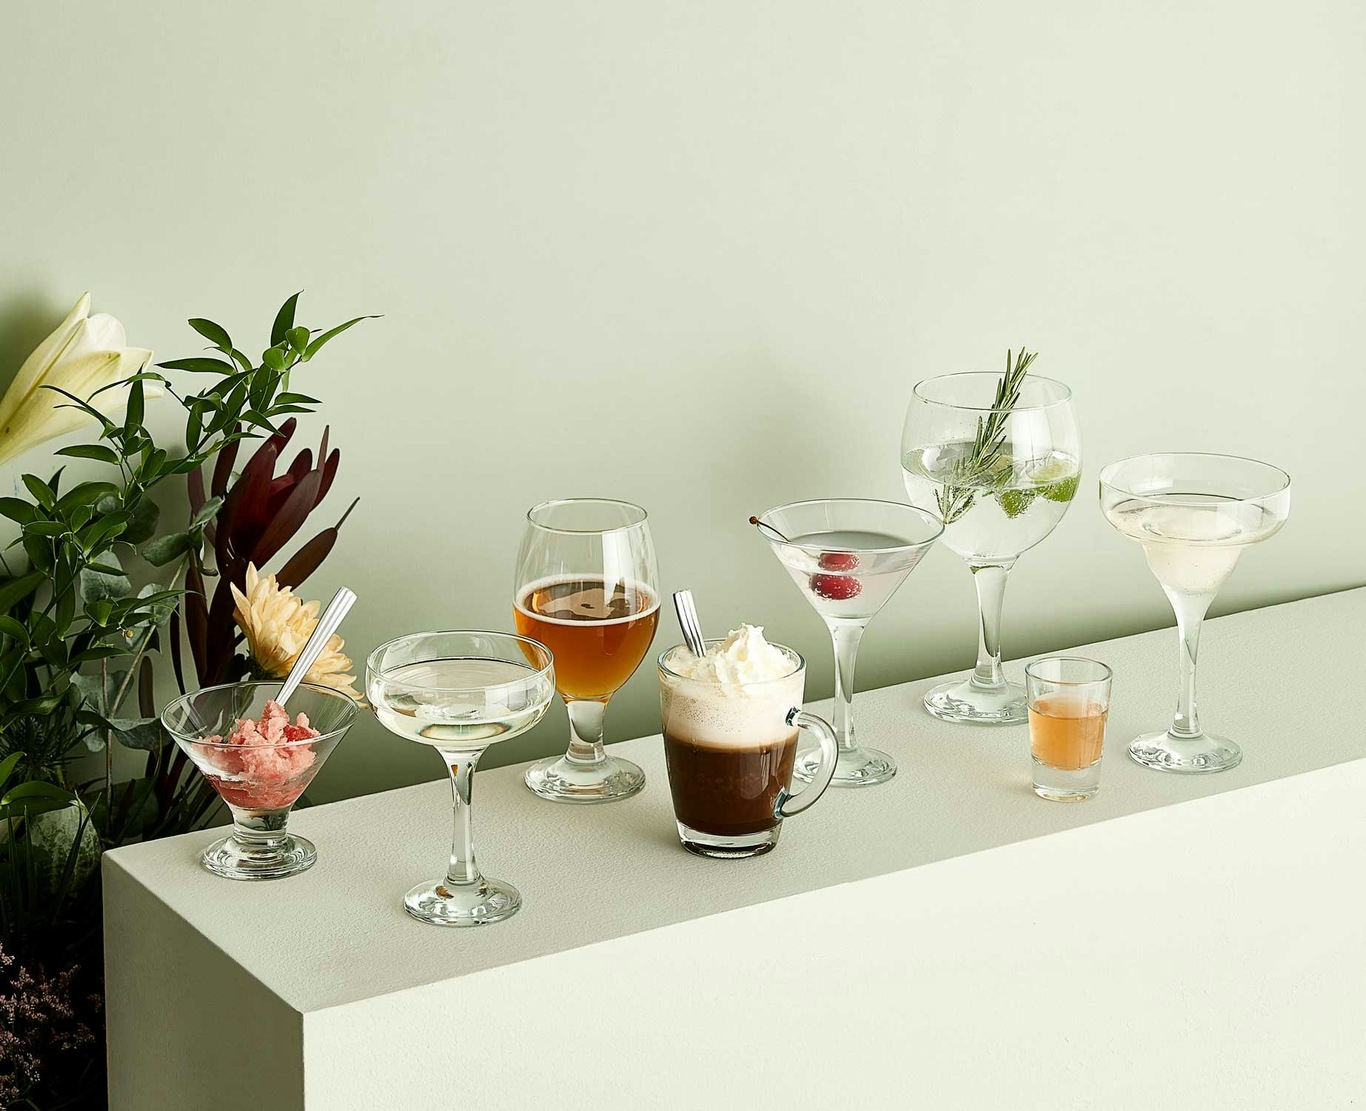 https://royaldesign.com/image/2/aida-cafe-hotdrink-glass-30-cl-h106mm-80mm-1?w=800&quality=80